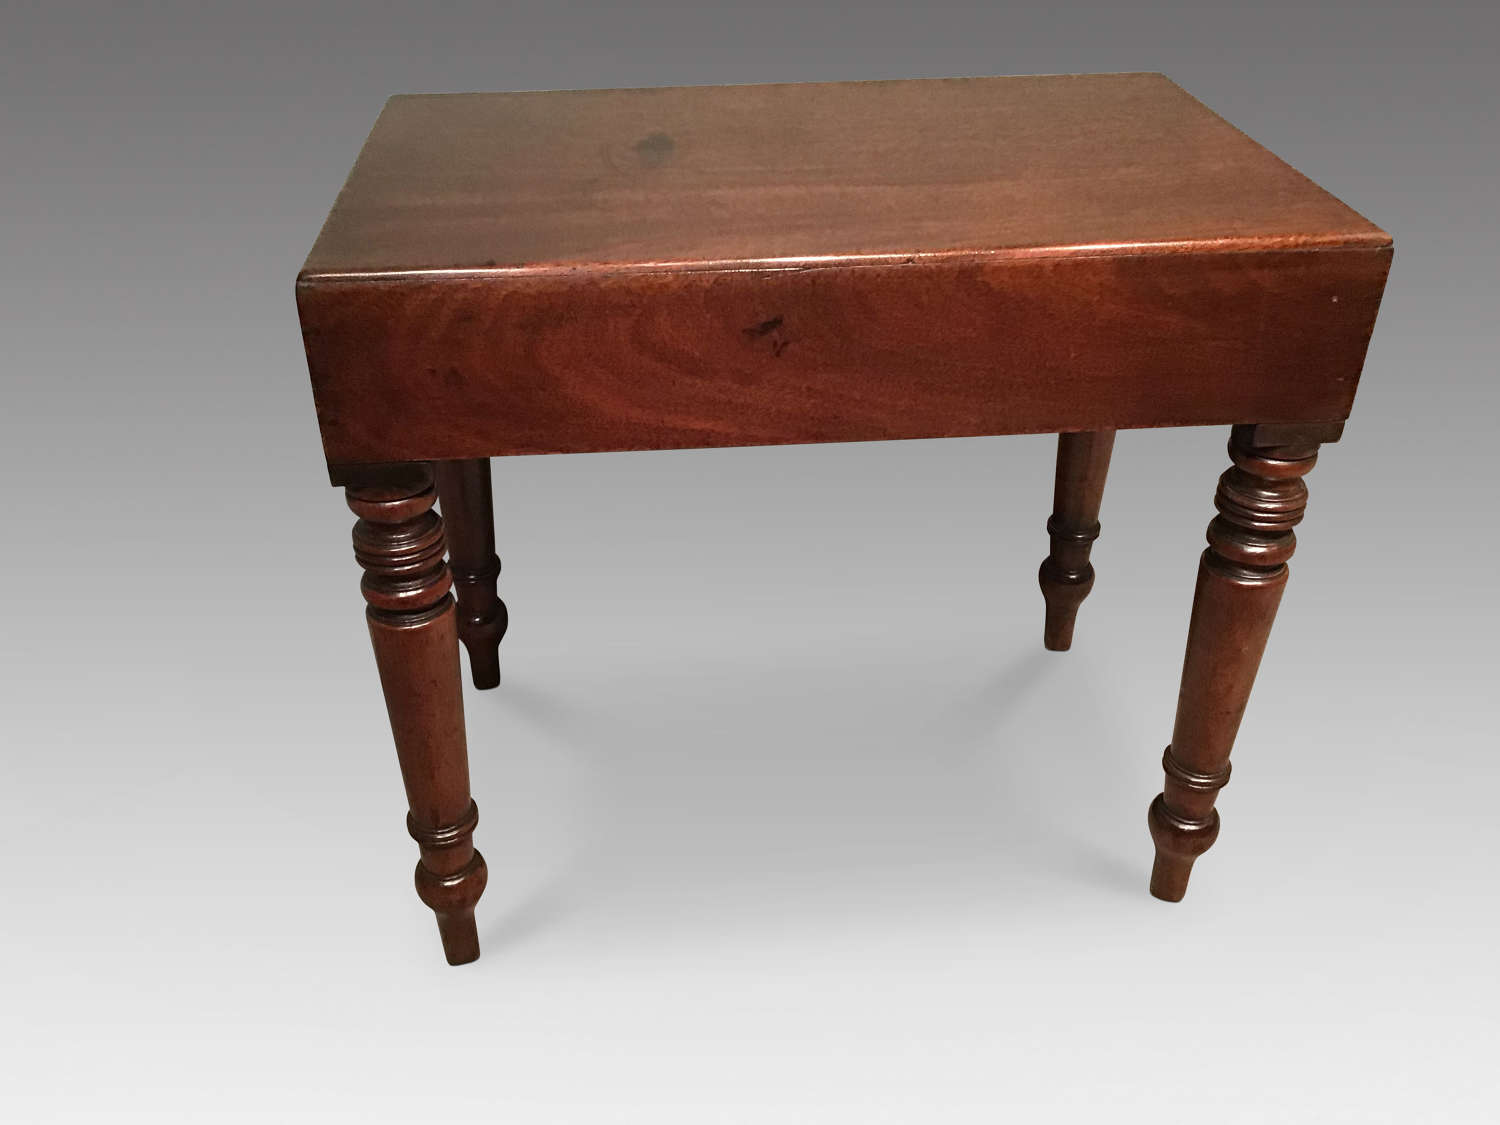 Antique mahogany stool